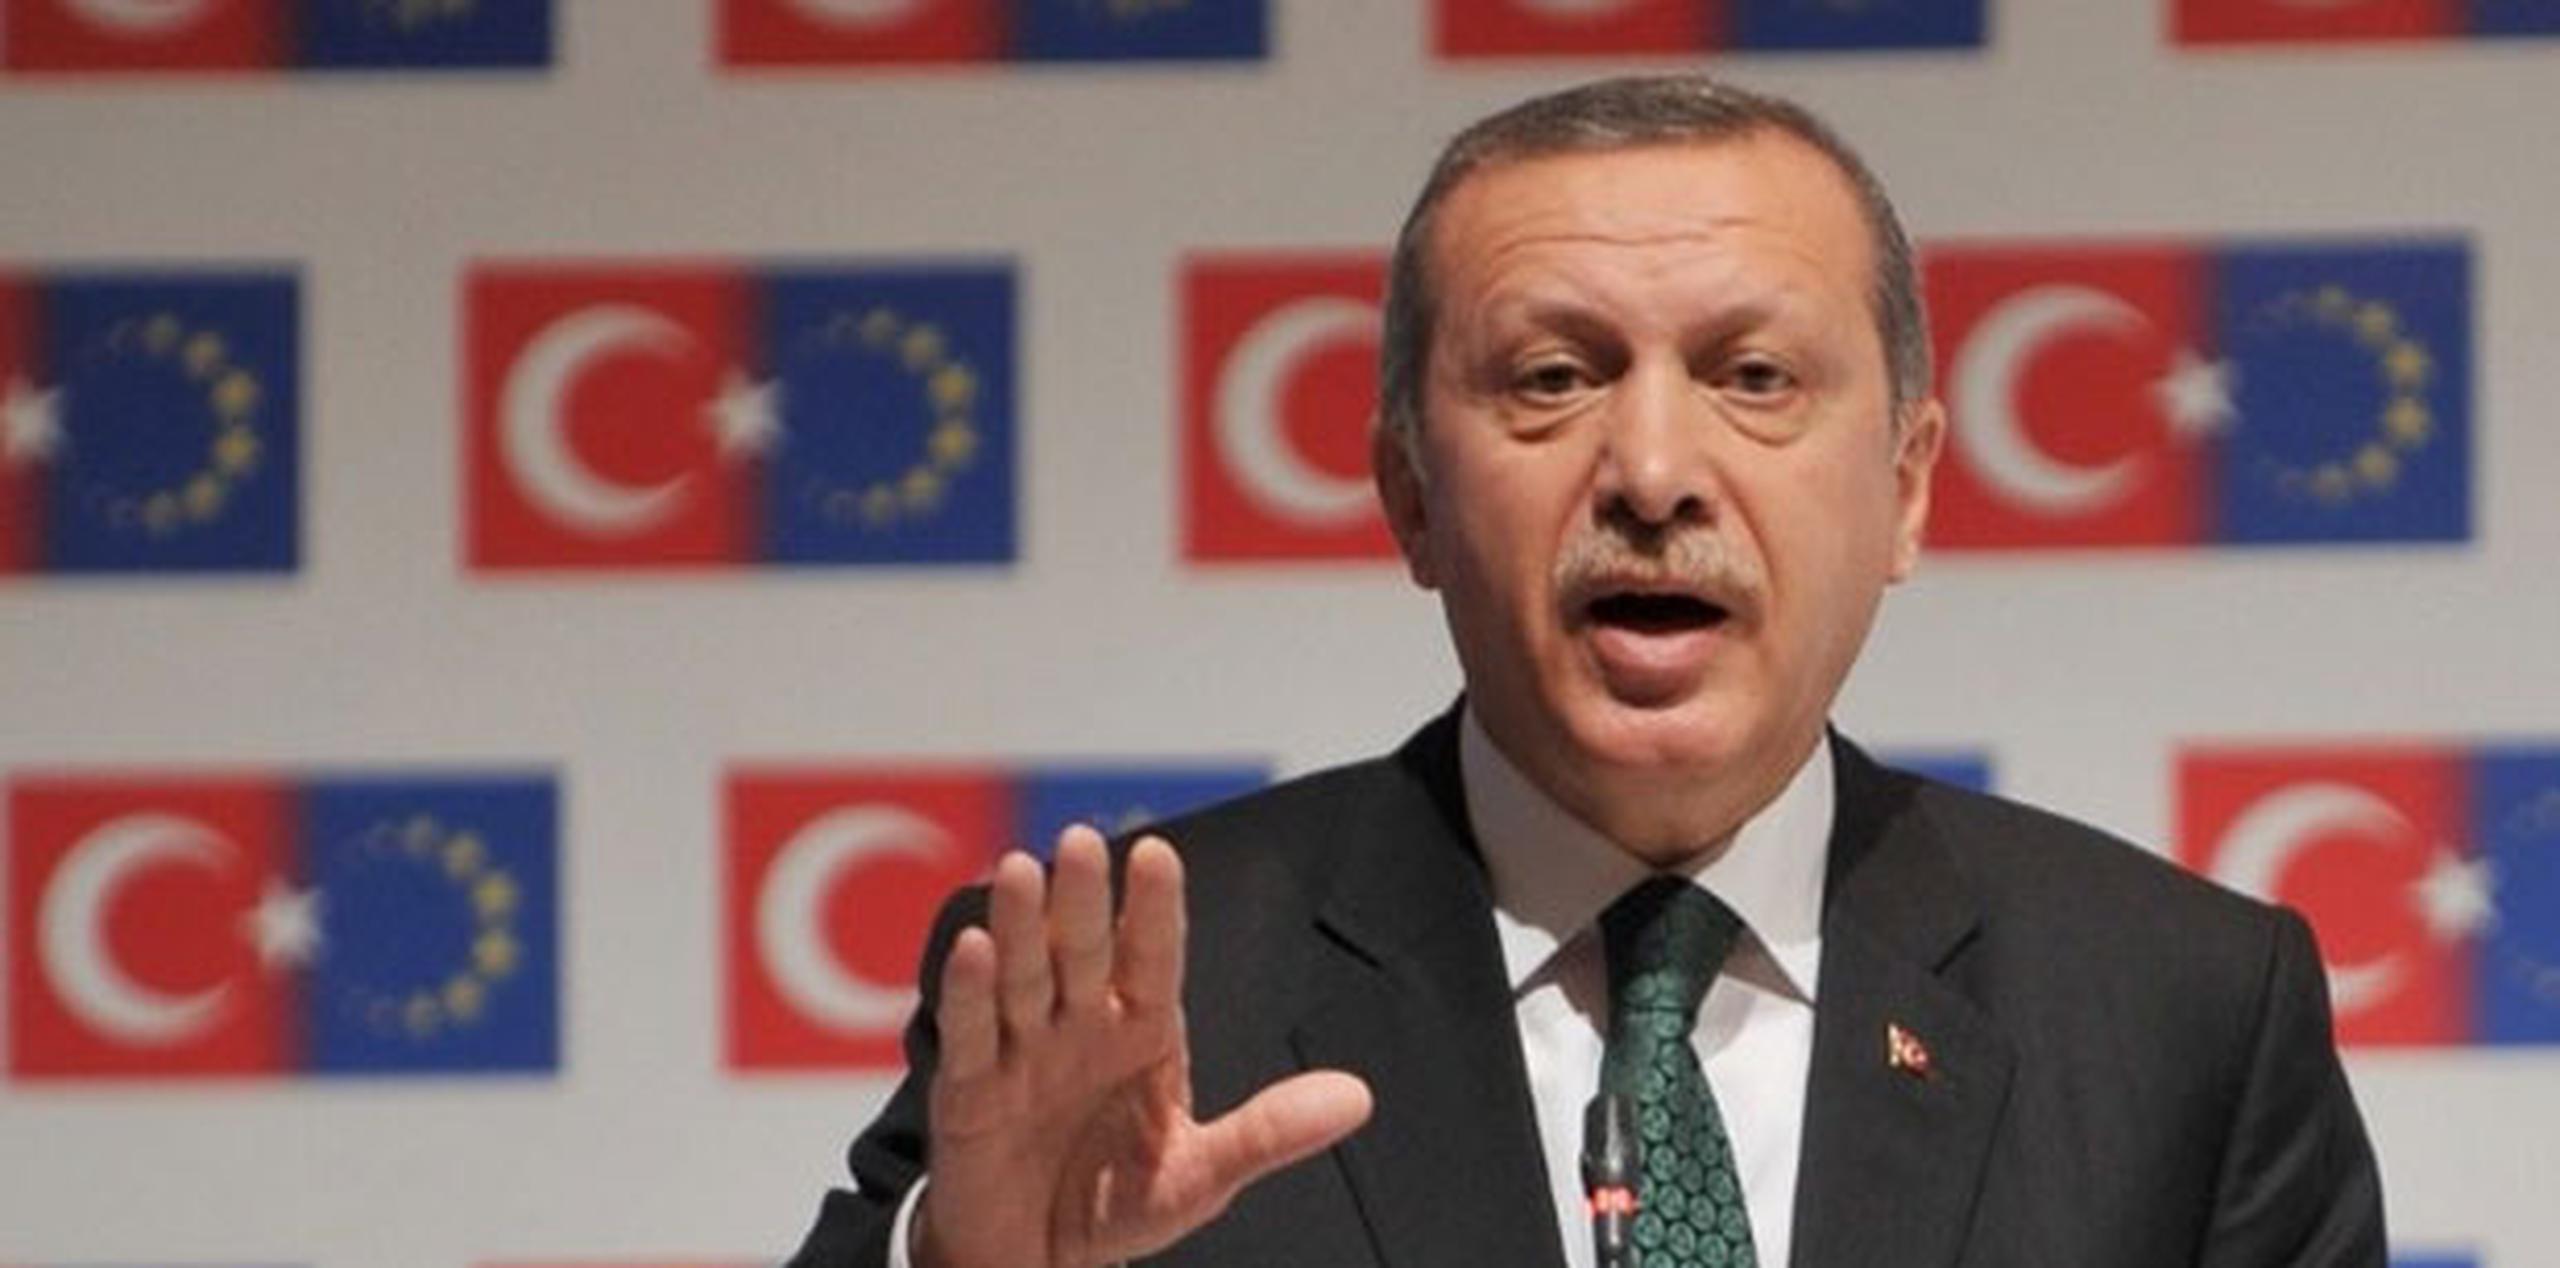 Recep Tayyip Erdogan está envuelto en un escándalo de corrupción del gobierno por la creación de un polémico palacio de 1,150 habitaciones inaugurado en octubre. (Archivo)